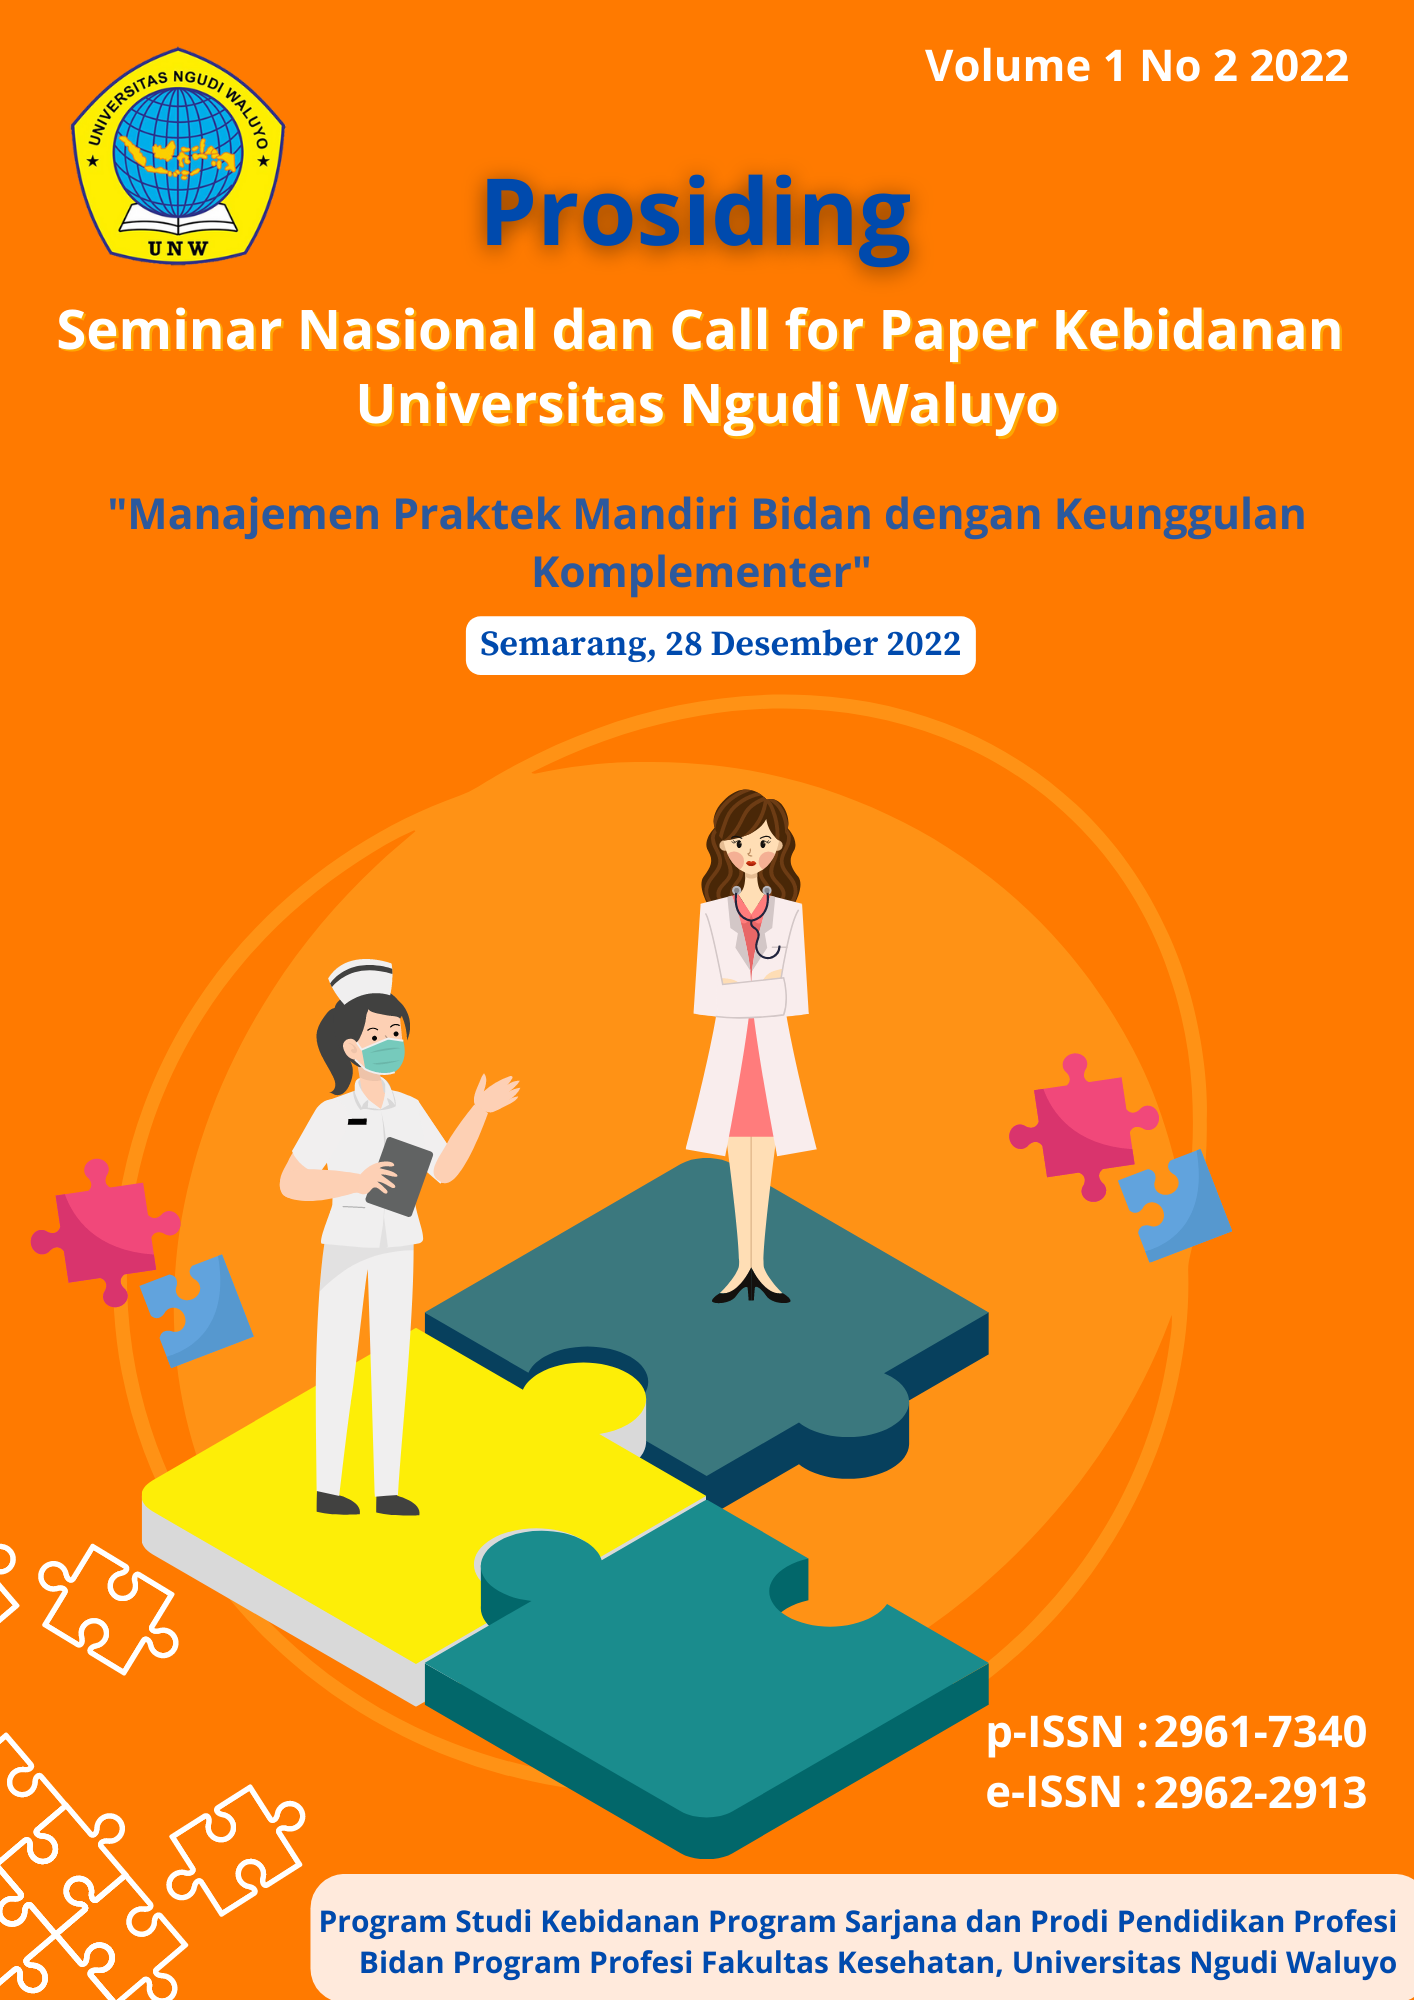 					View Vol. 1 No. 2 (2022): Prosiding Seminar Nasional dan Call for Paper Kebidanan Universitas Ngudi Waluyo
				